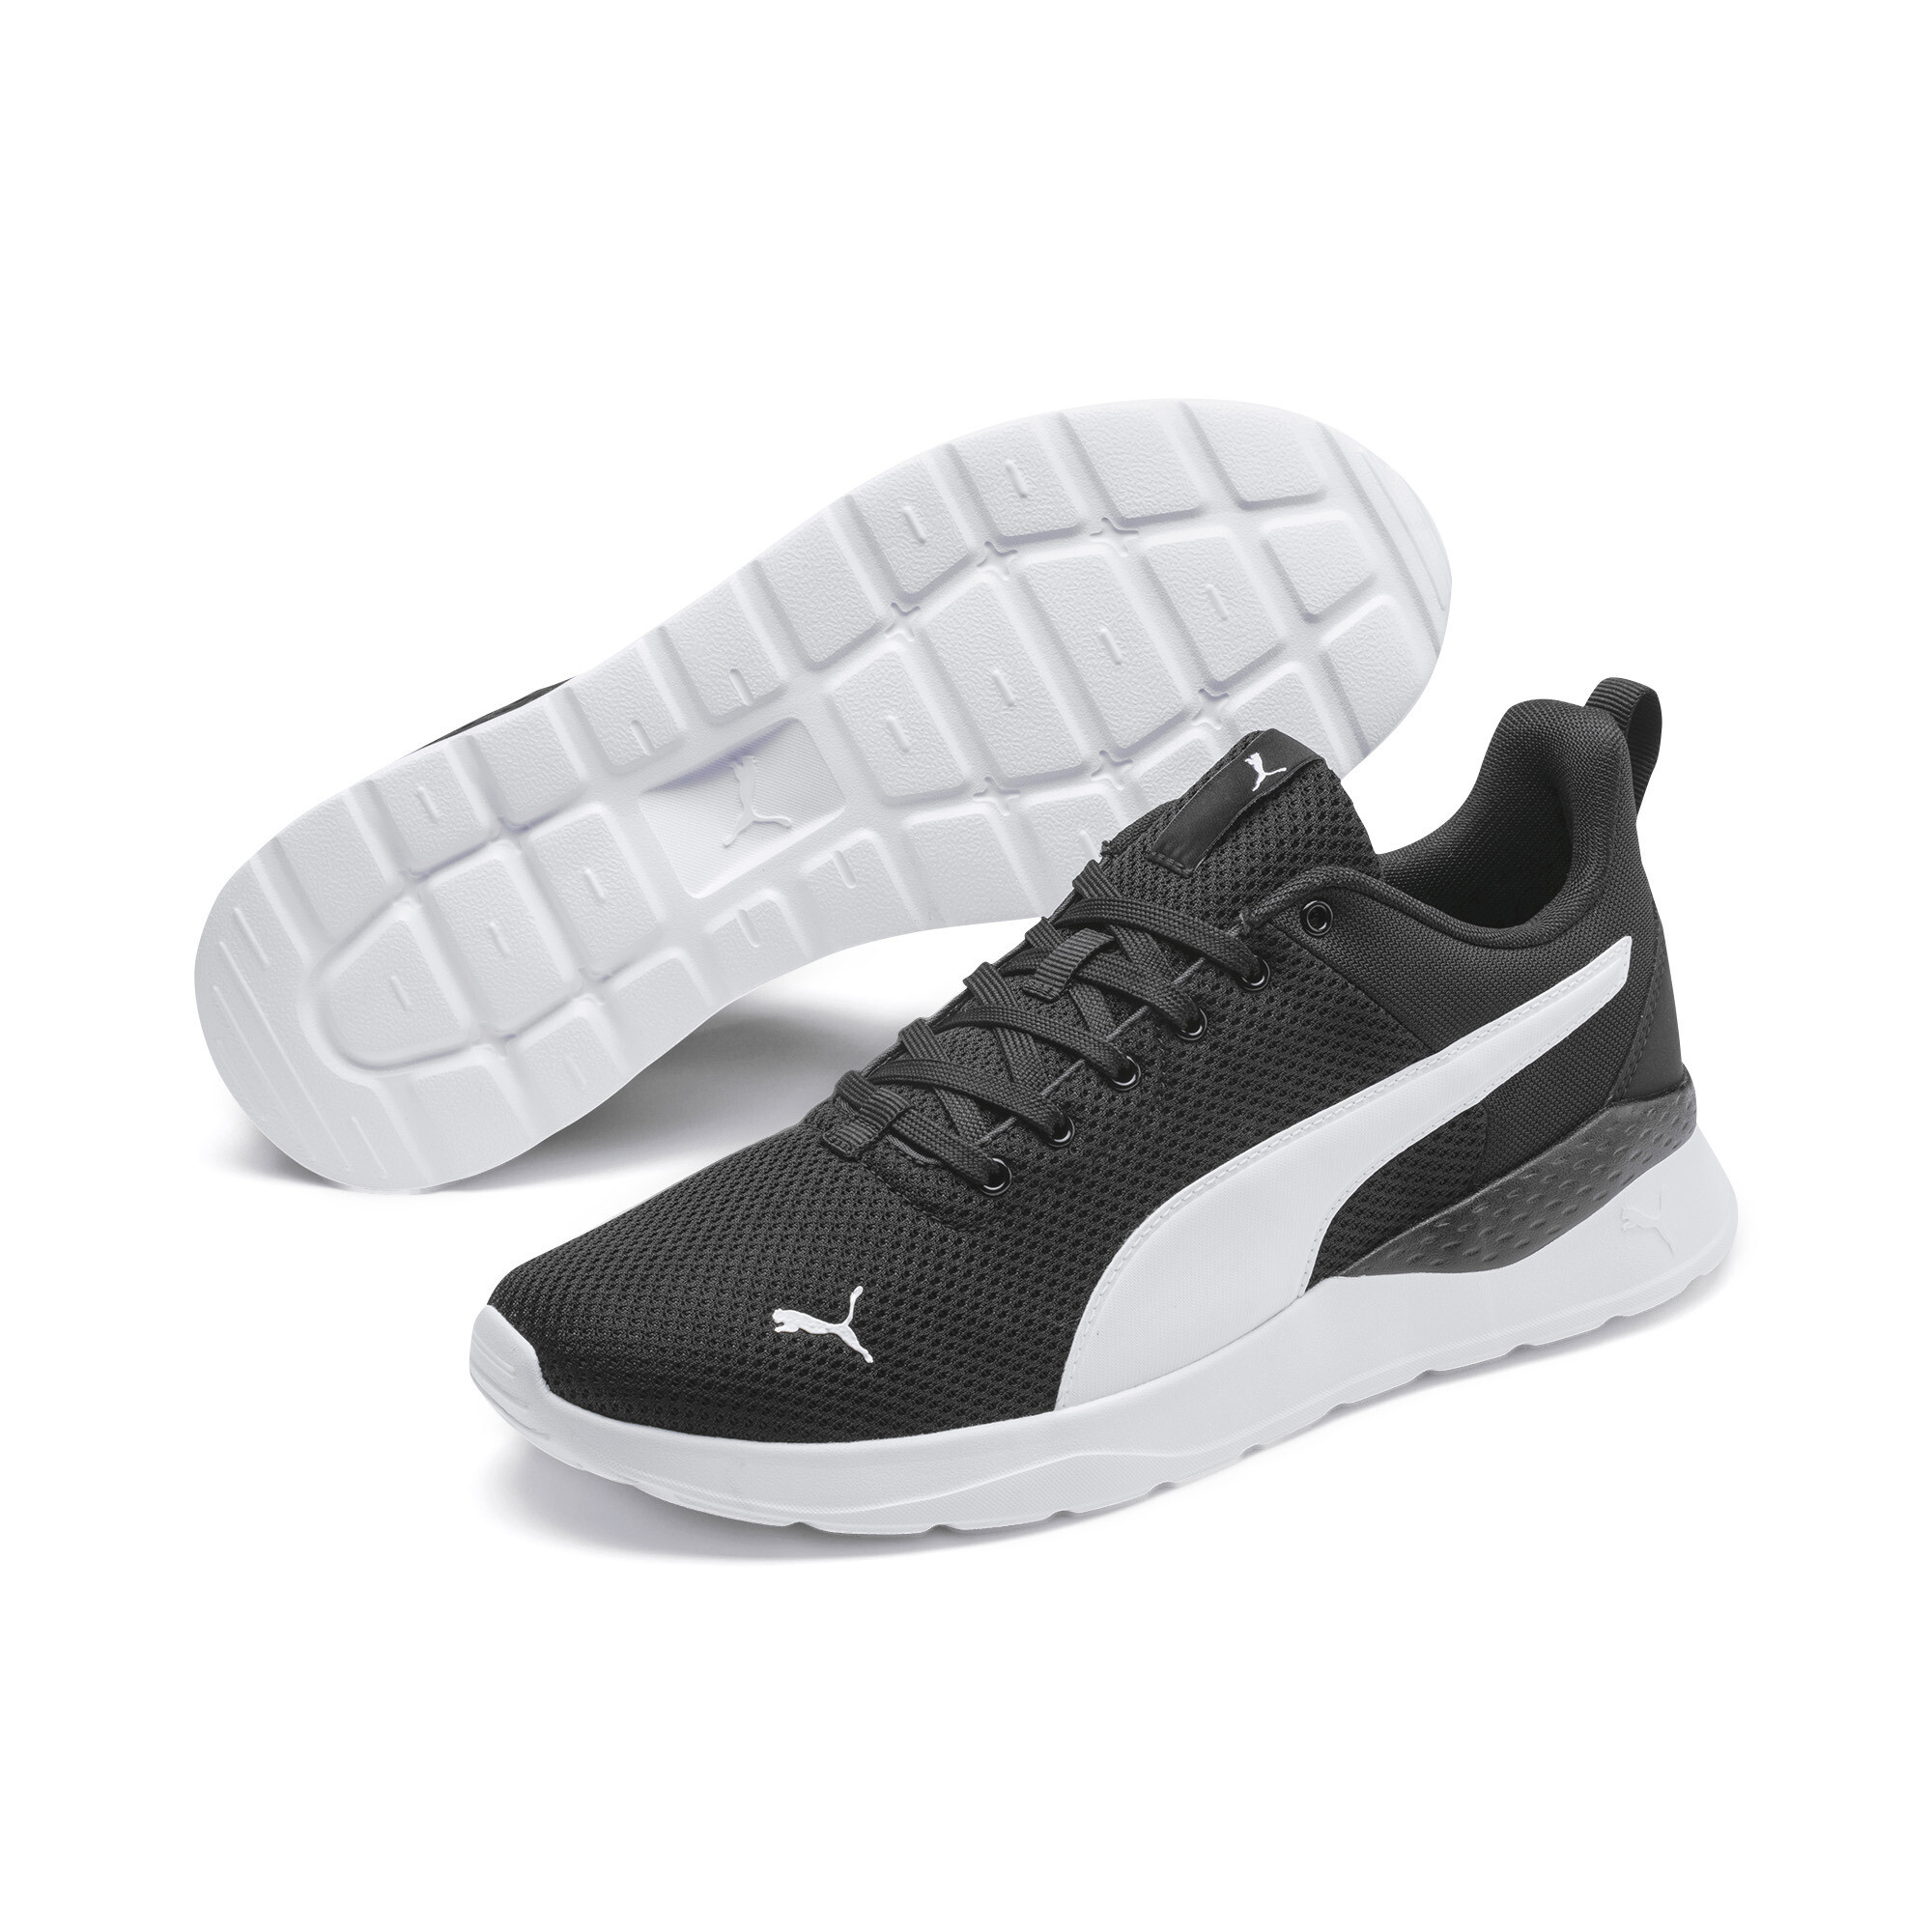 Men's PUMA Anzarun Lite Trainers Shoes In Black, Size EU 40